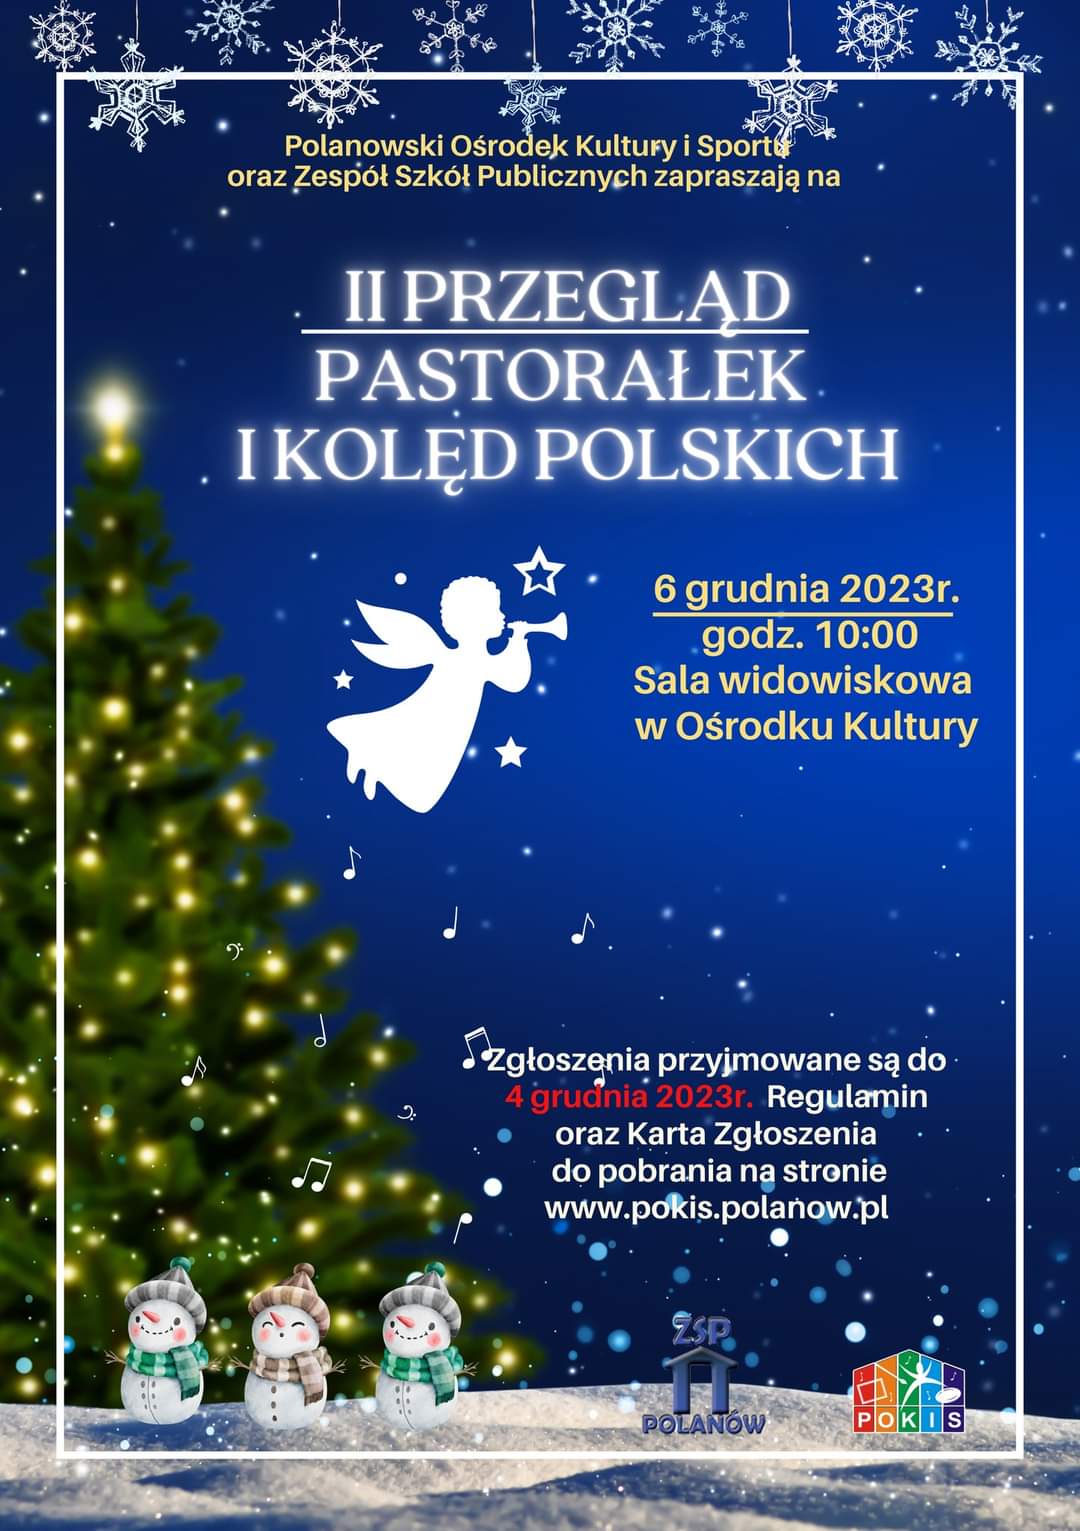 Plakat z zaproszeniem na 2 przegląd pastorałek i kolęd polskich w Polanowie 6 grudnia 2023